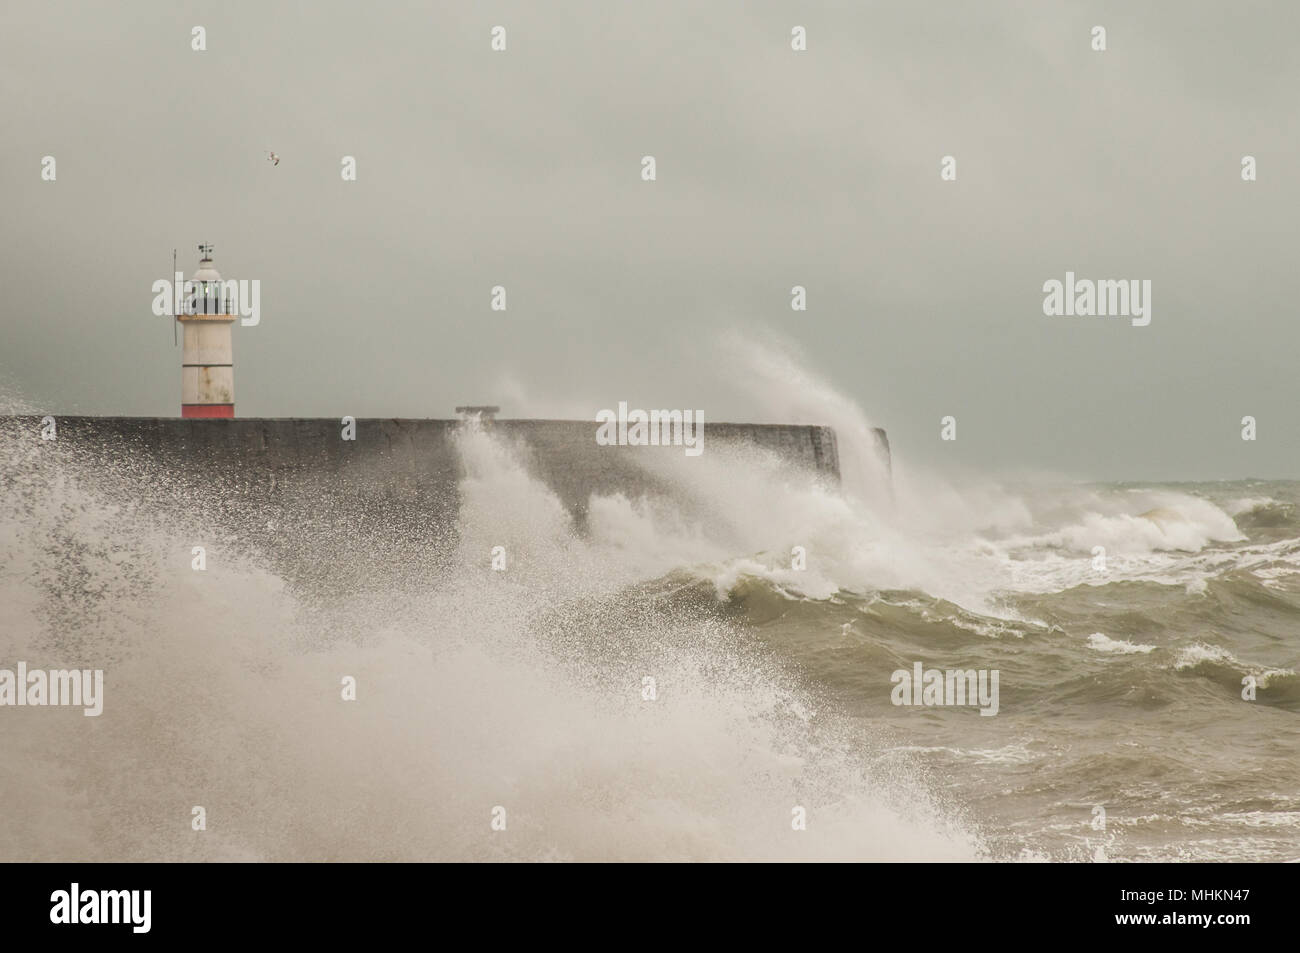 Newhaven, East Sussex, UK..2. Mai 2018. Großbritannien Wetter: Heller später am Tag nach dunklen Wolken & Regen peitscht starker Wind die Brandung am Hafen West Break Water an, bevor er endlich abatscht. Stockfoto